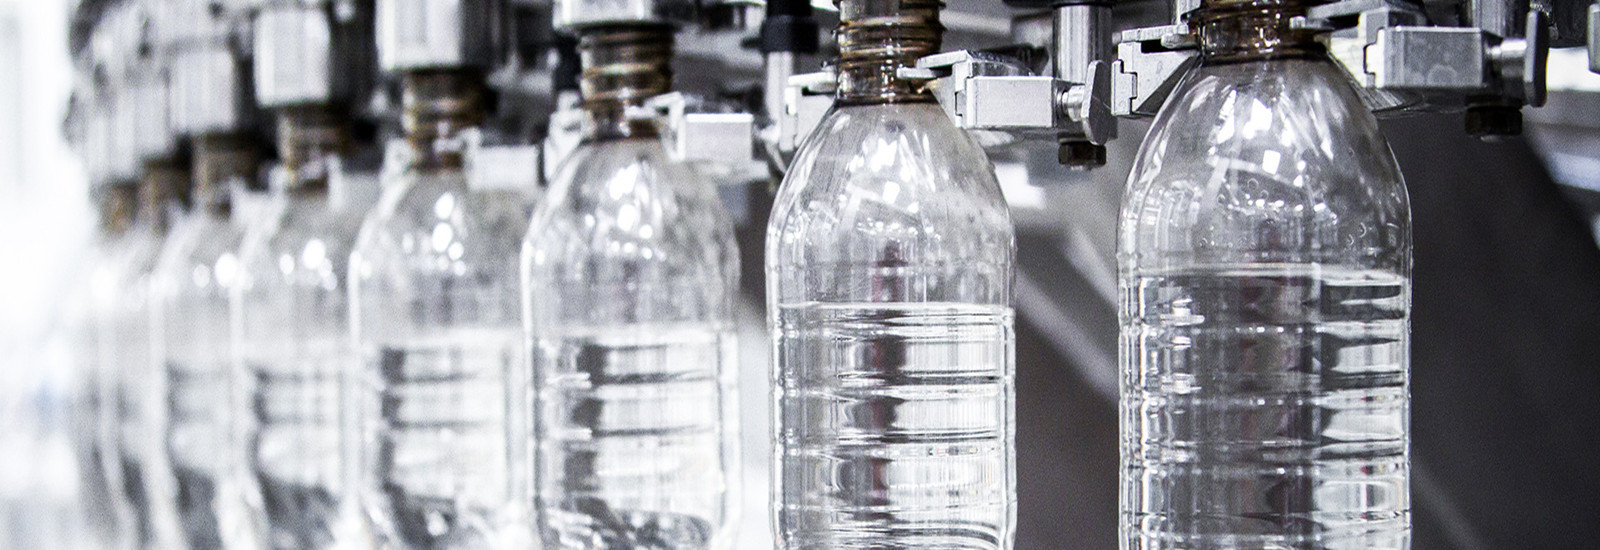 ποιότητας Μηχανή πλήρωσης μπουκαλιών νερό εργοστάσιο